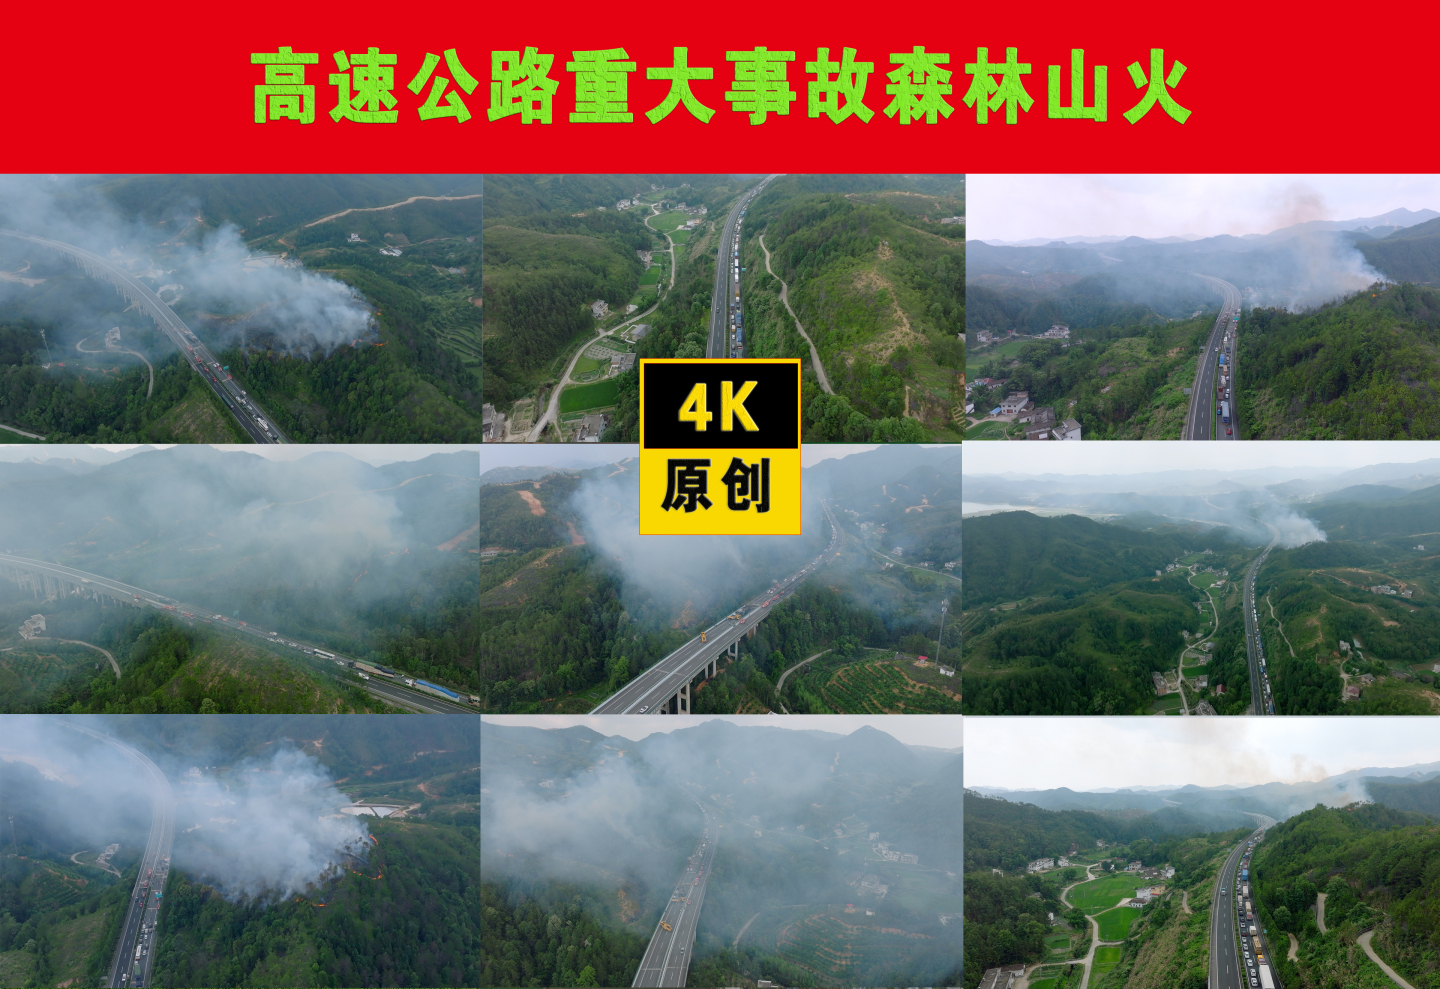 高速公路重大事故森林山火